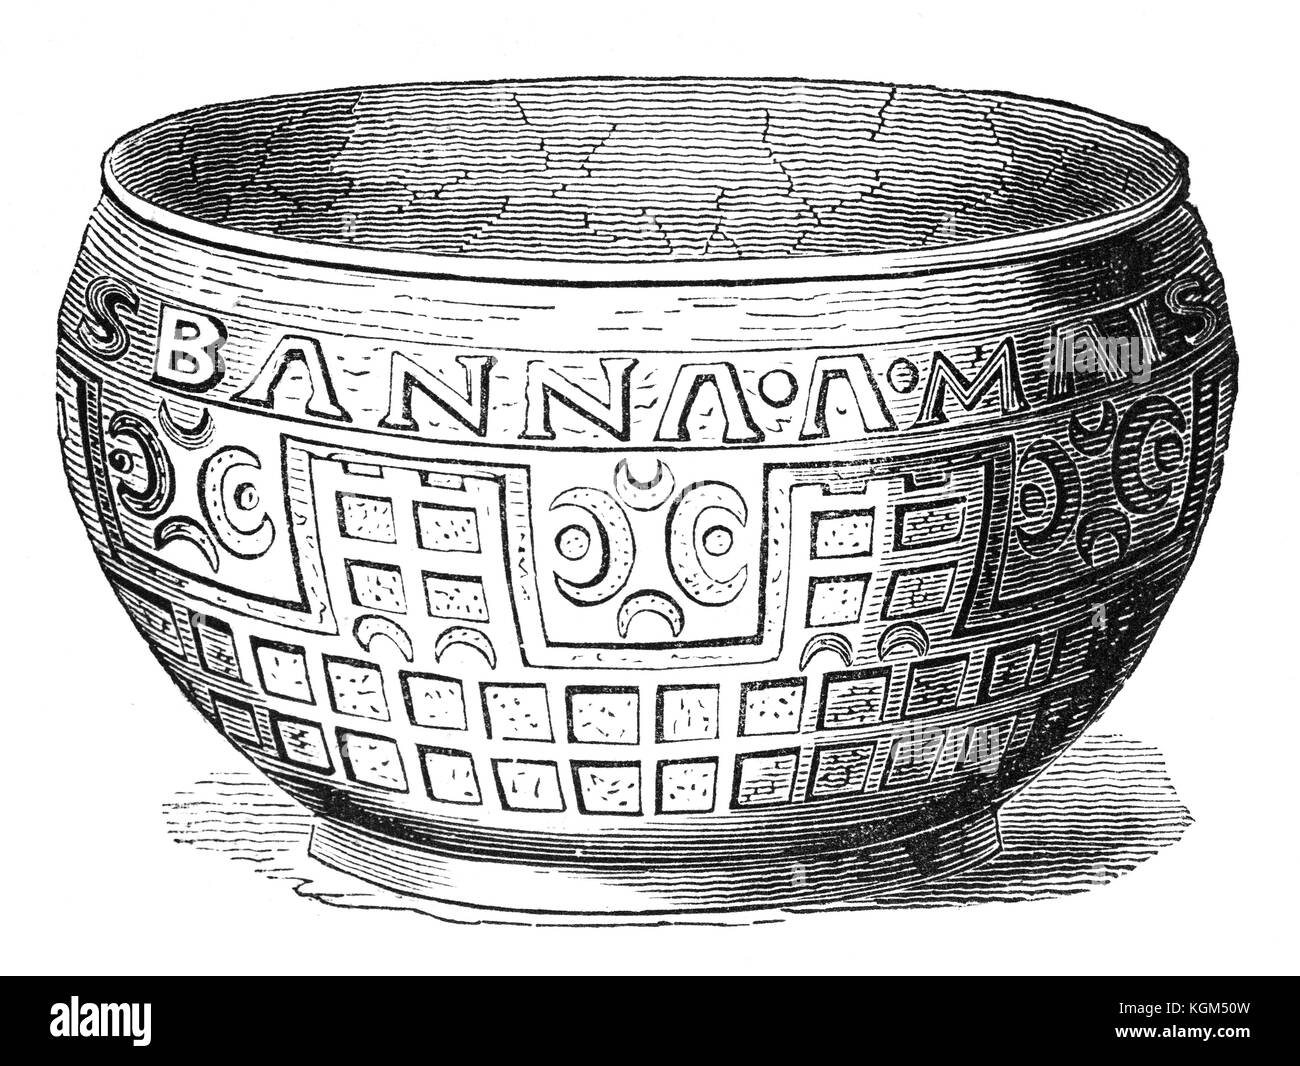 Un esempio del primo secolo Roman-British arte trovato su una patera di bronzo o Abbeveratoio; offre i nomi di città romane nel margine. Trovato nel Wiltshire, Inghilterra Foto Stock